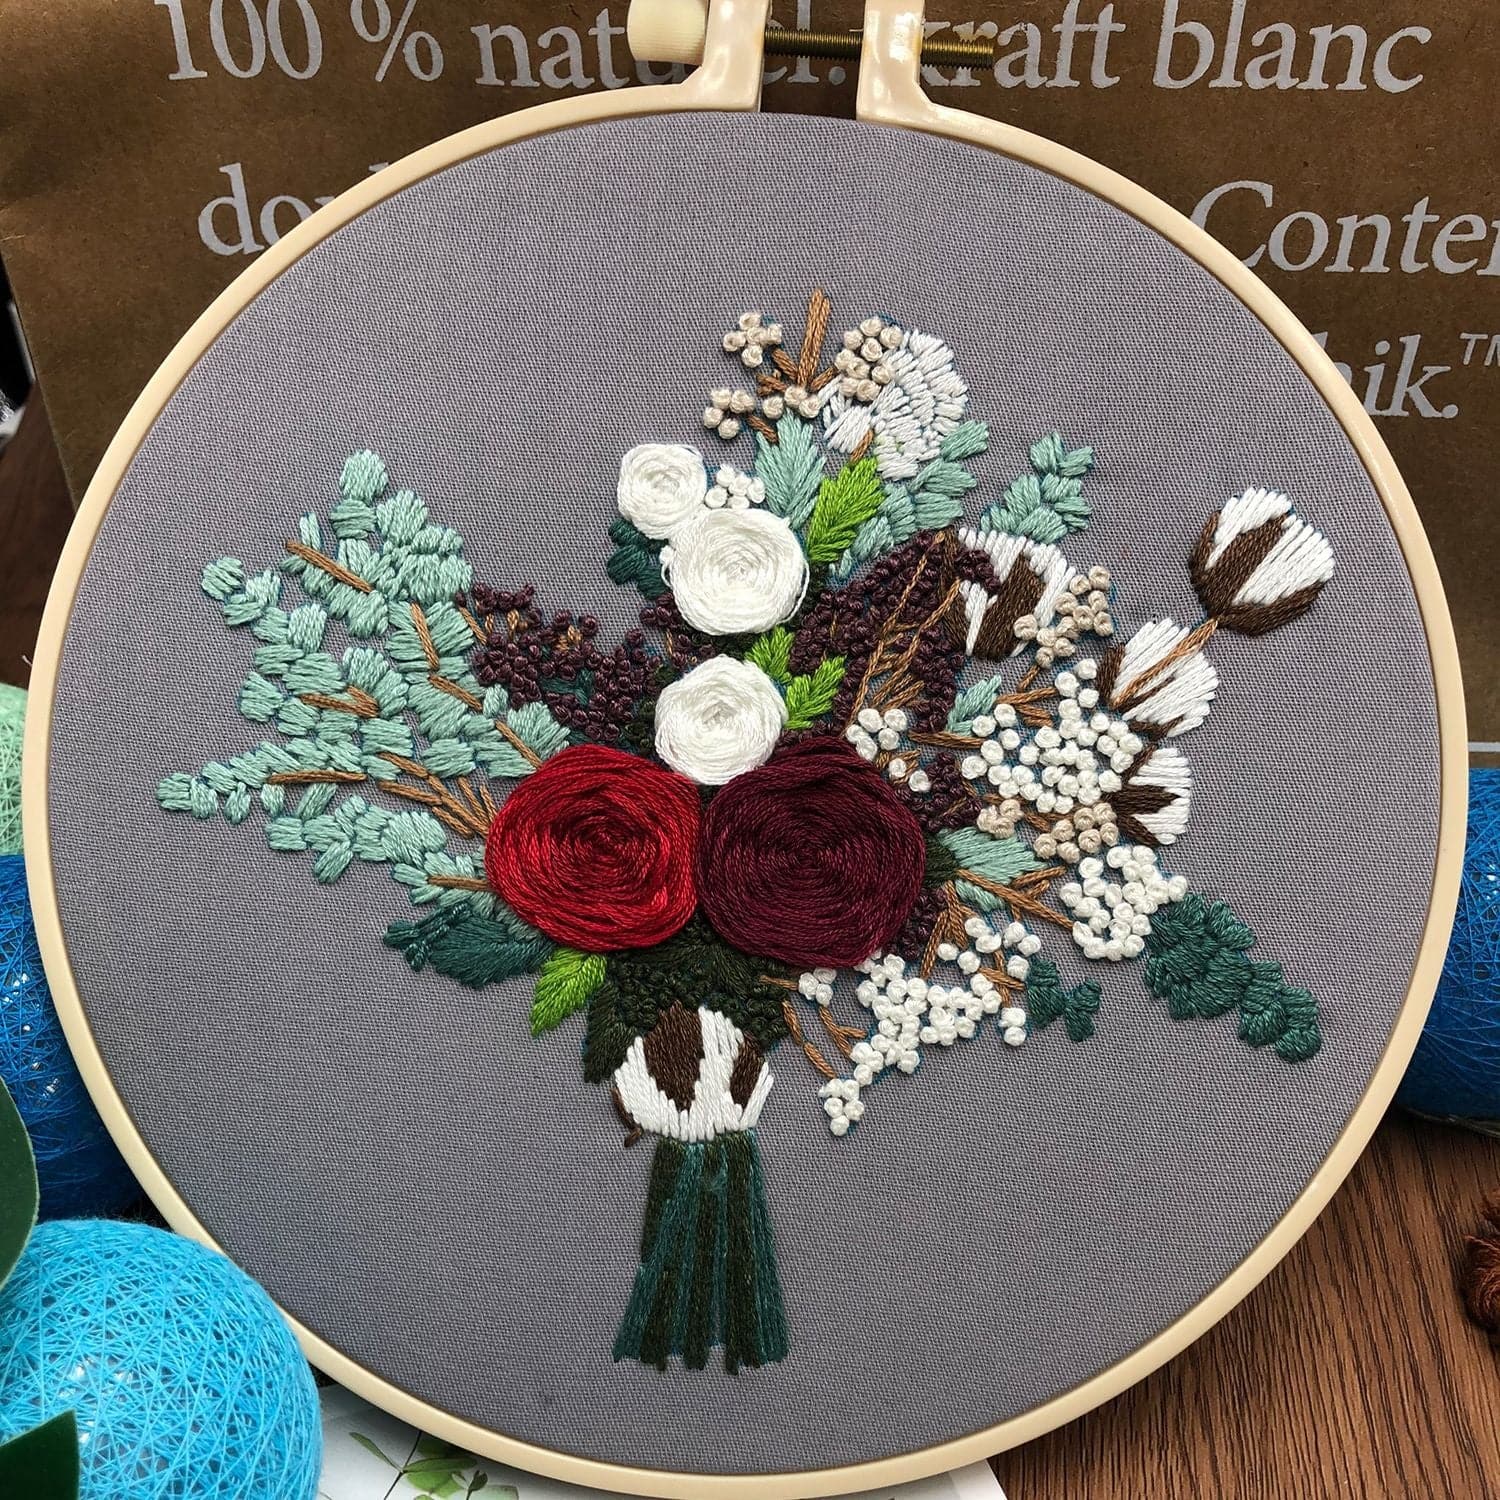 Flowers - Embroidery ktclubs.com